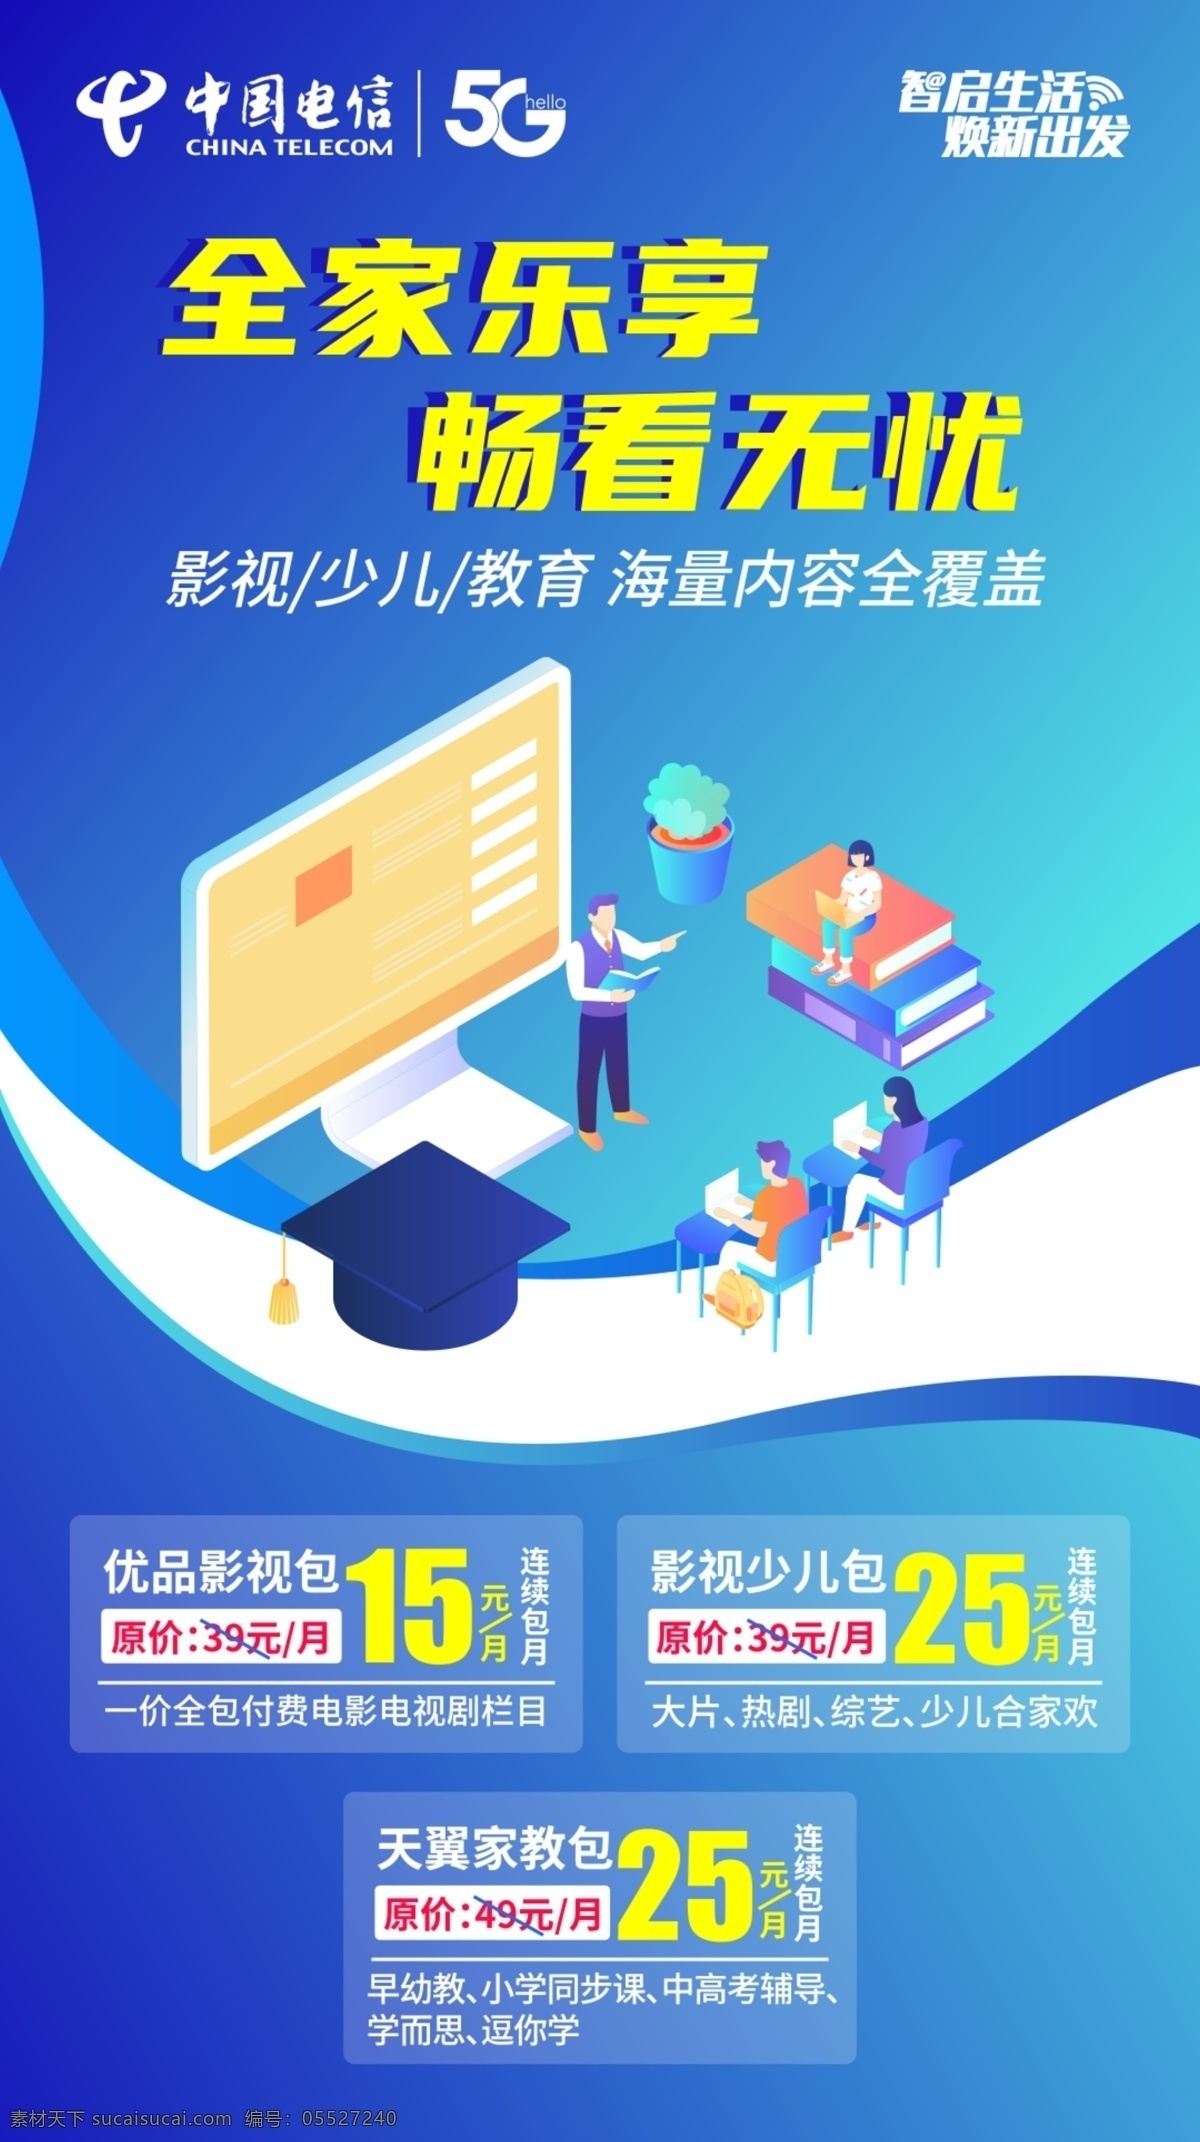 中国电信 优 品 包 海报 5g 优品包 电脑 卡通人物